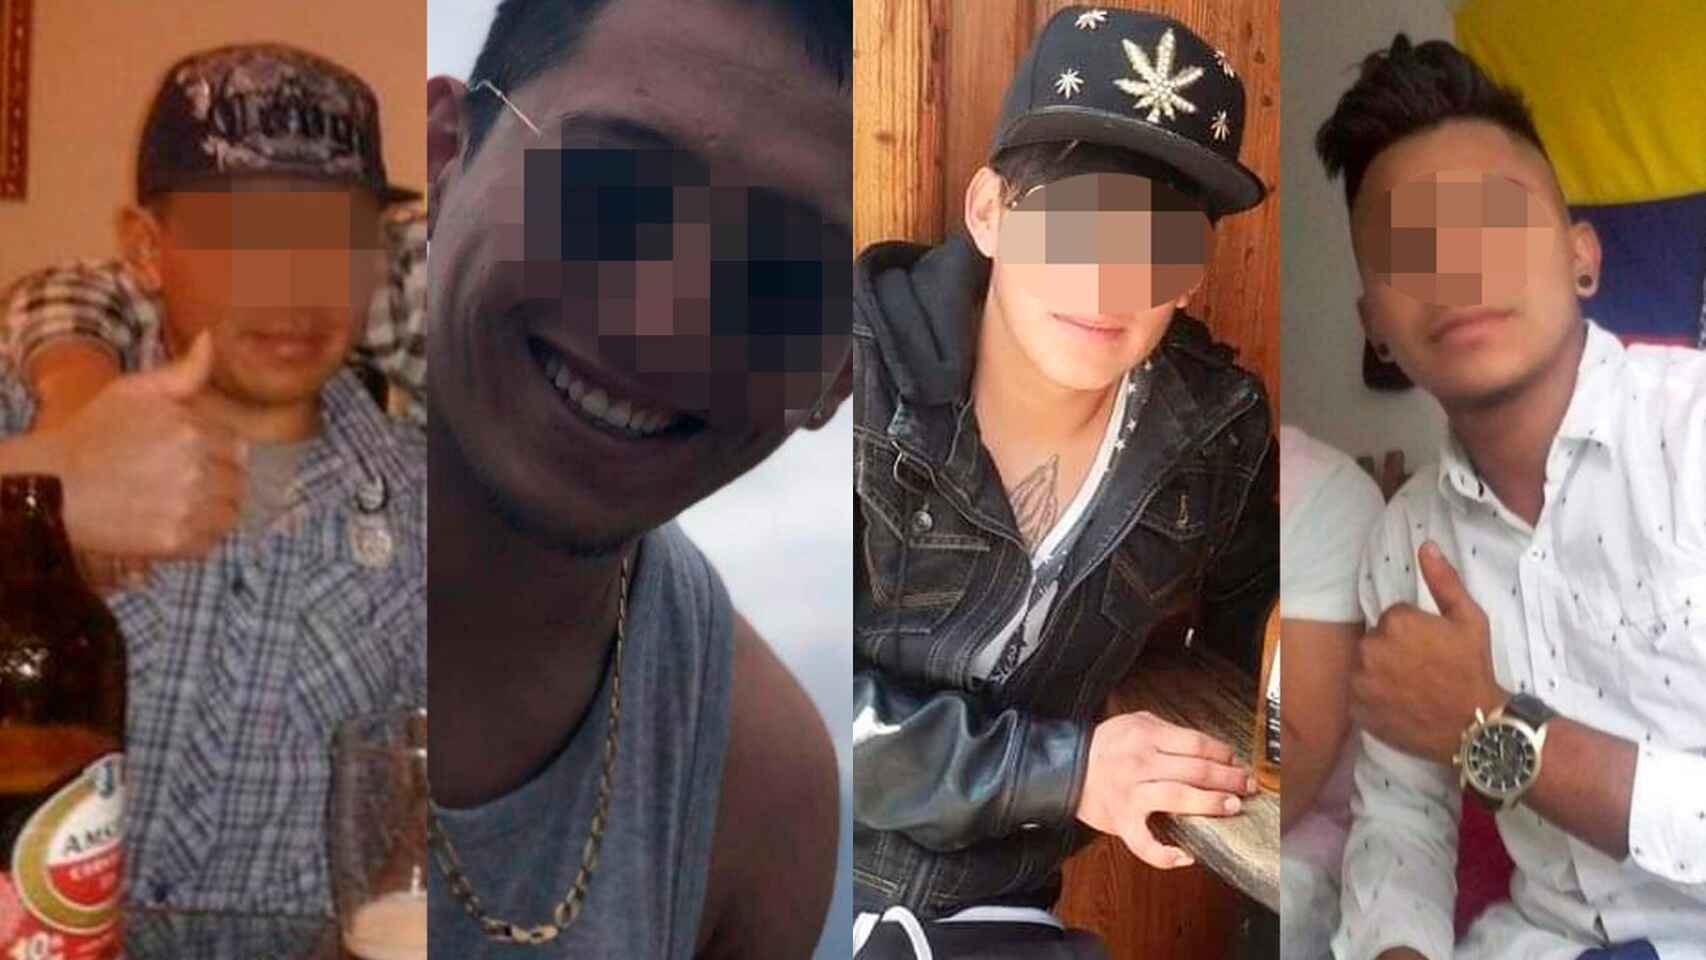 Los cuatro presuntos violadores a los que el juez envió a prisión tras agredir sexualmente a una joven de 19 años. EE